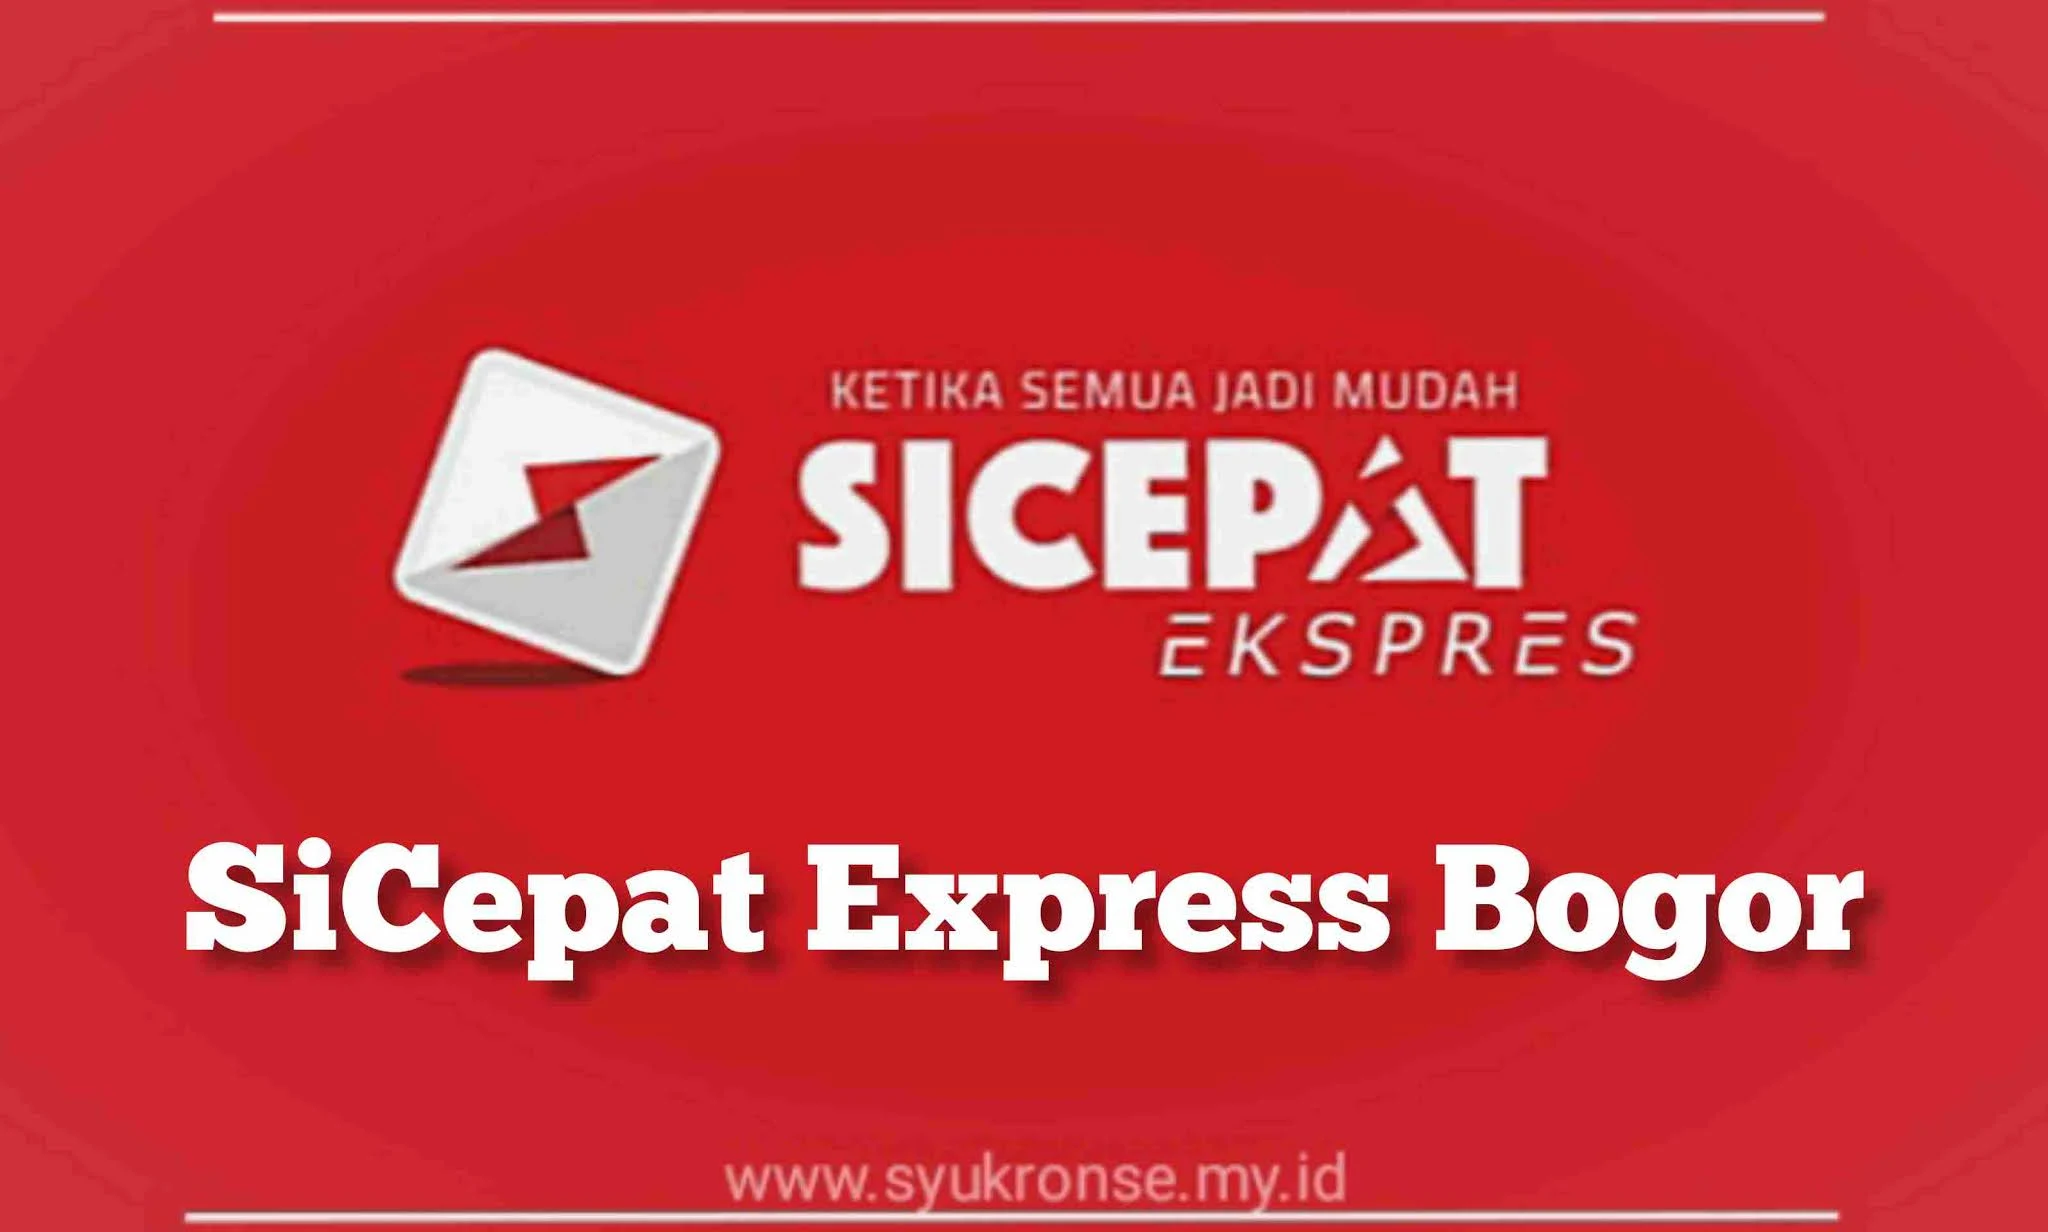 SiCepat Express Bogor